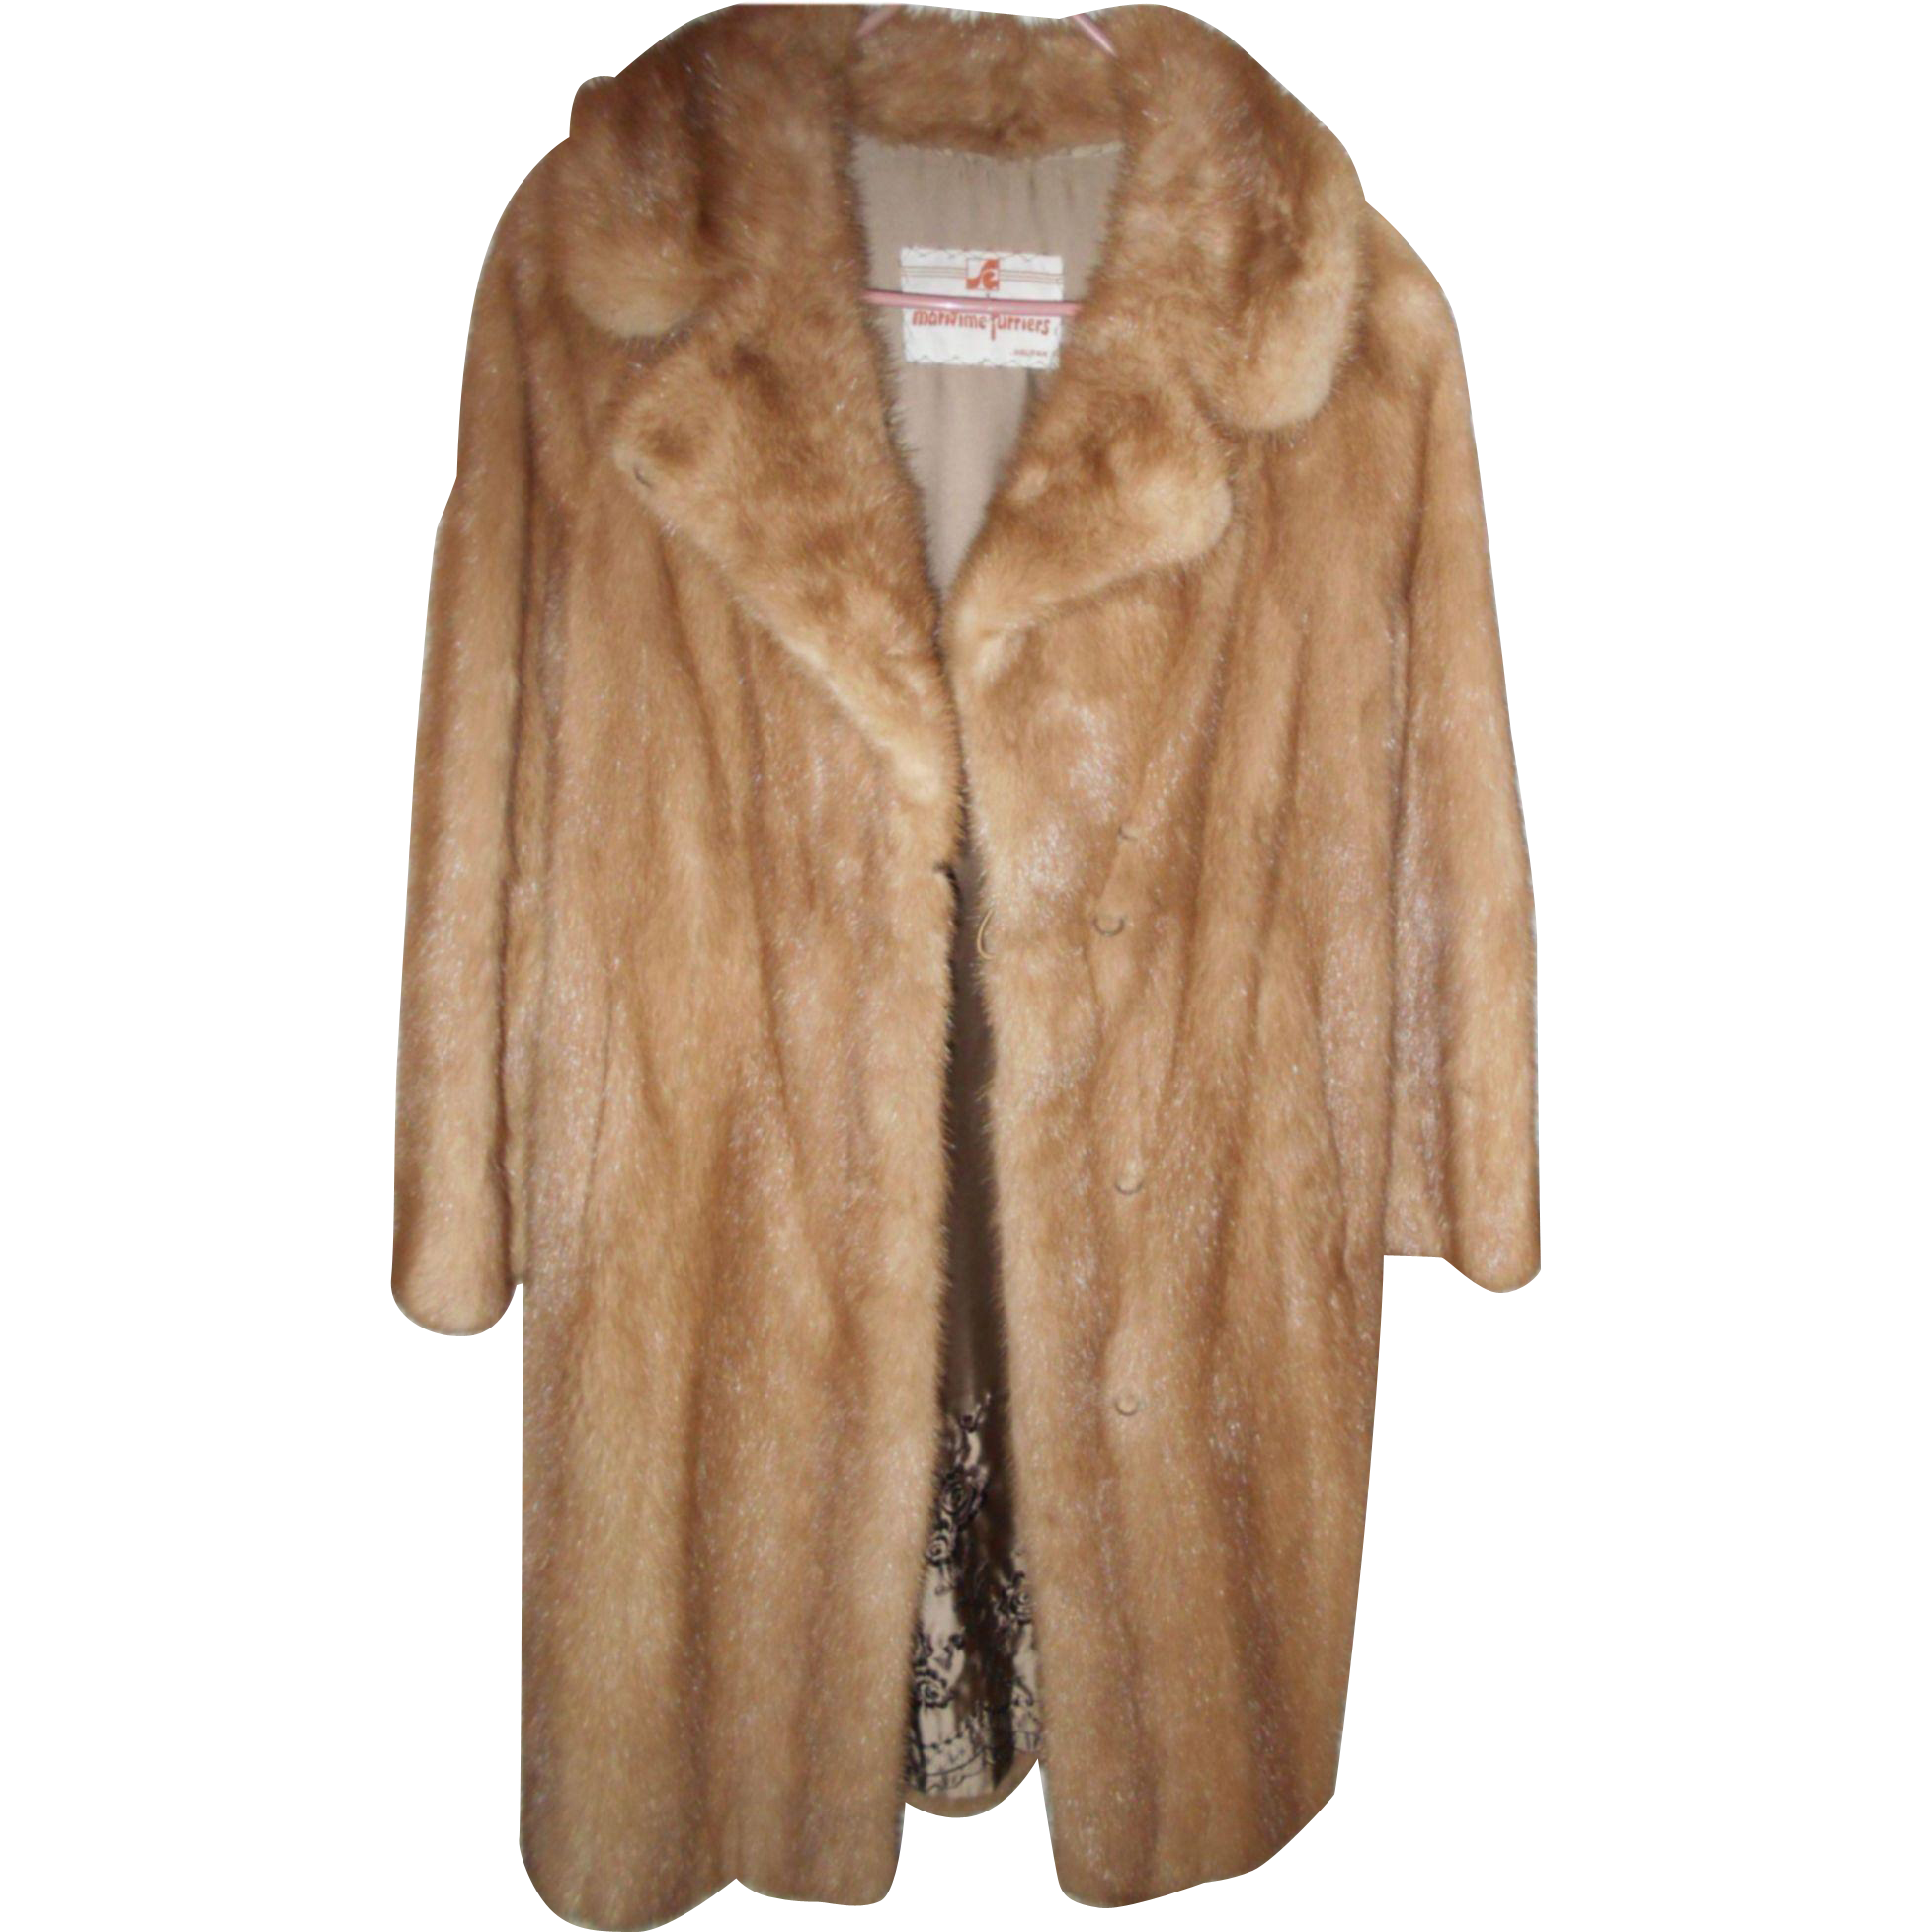 Fur Coat PNG Image Background